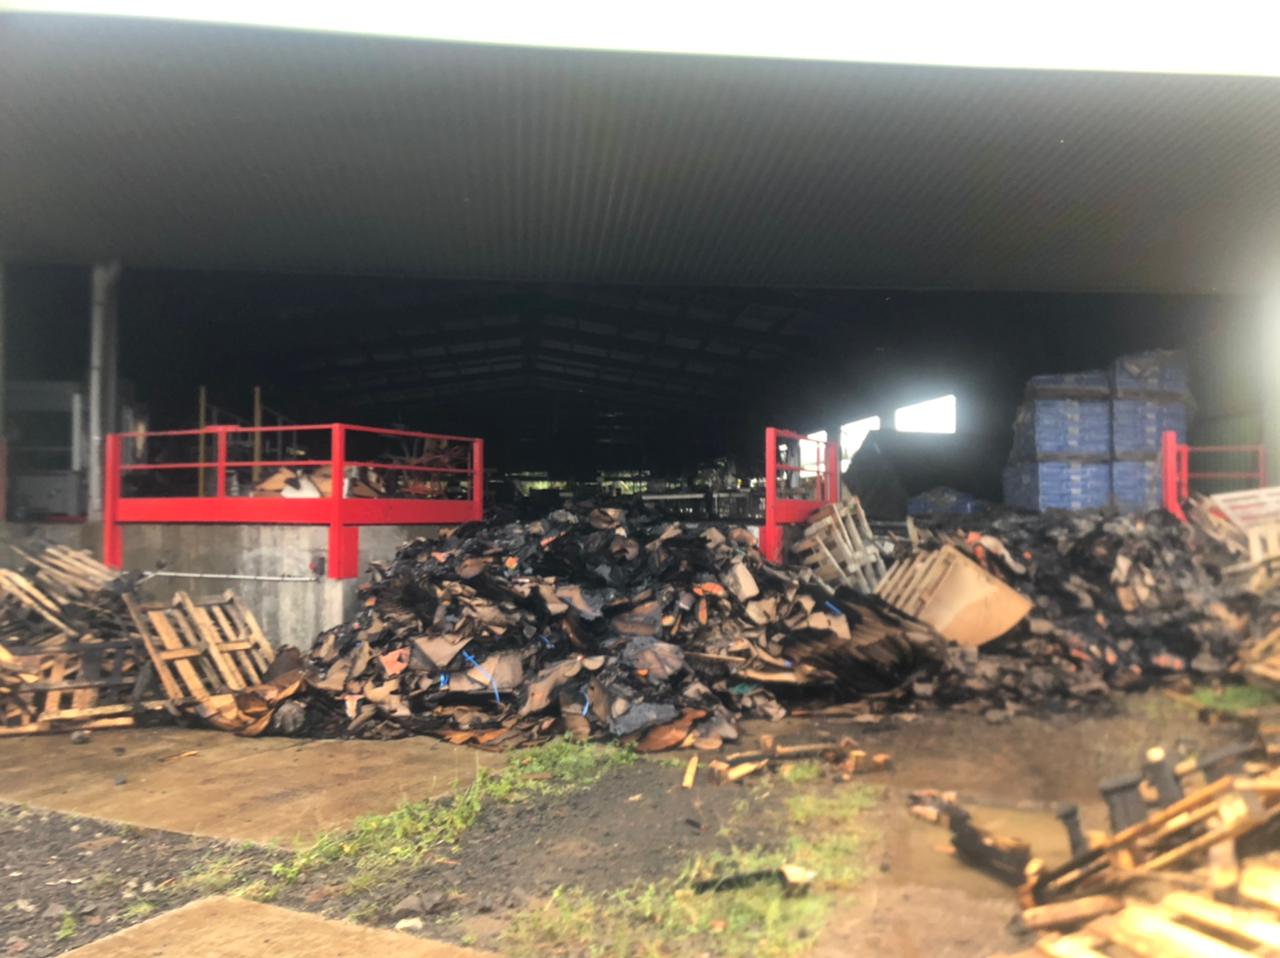     Incendie d'un hangar à banane : les ouvriers agricoles inquiets pour leurs emplois

